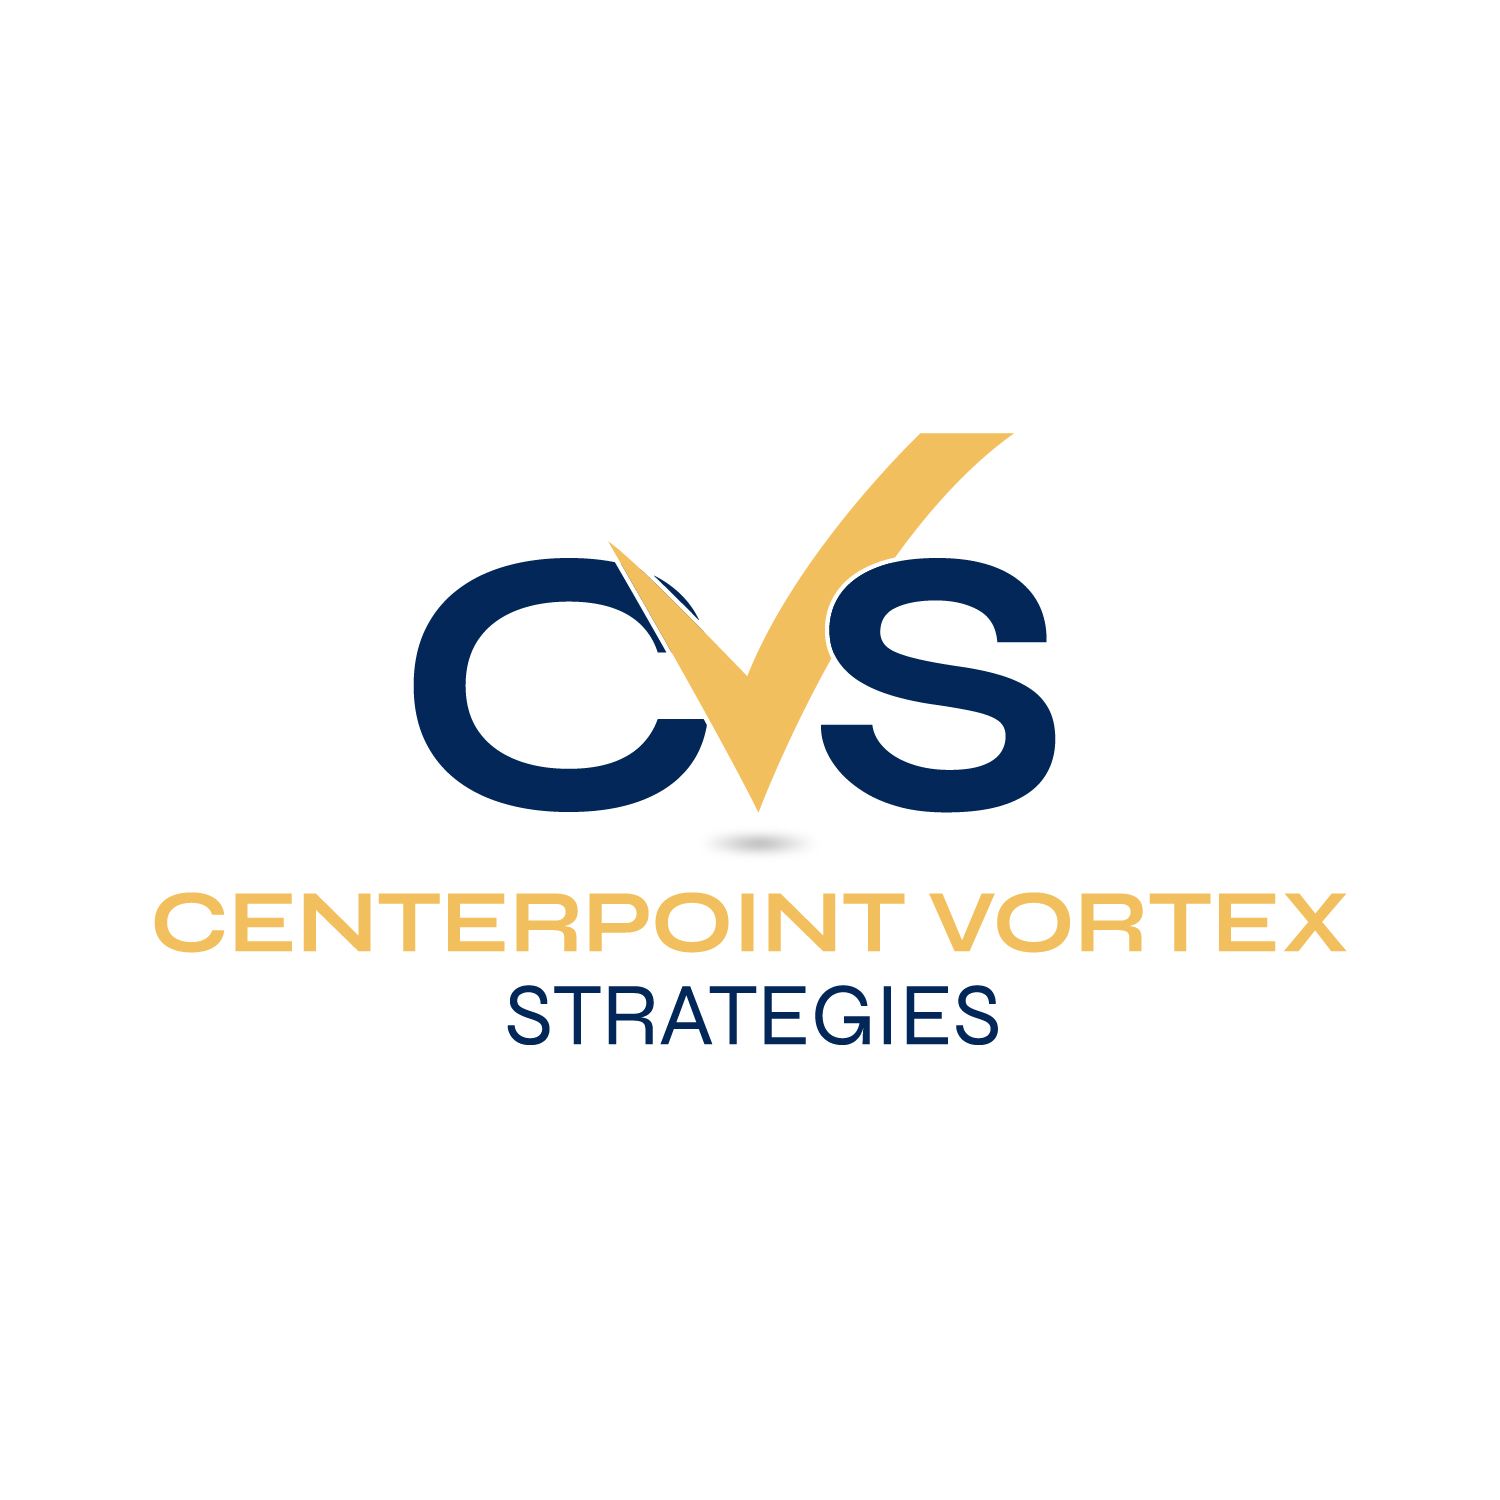 Centerpoint Vortex Strategies